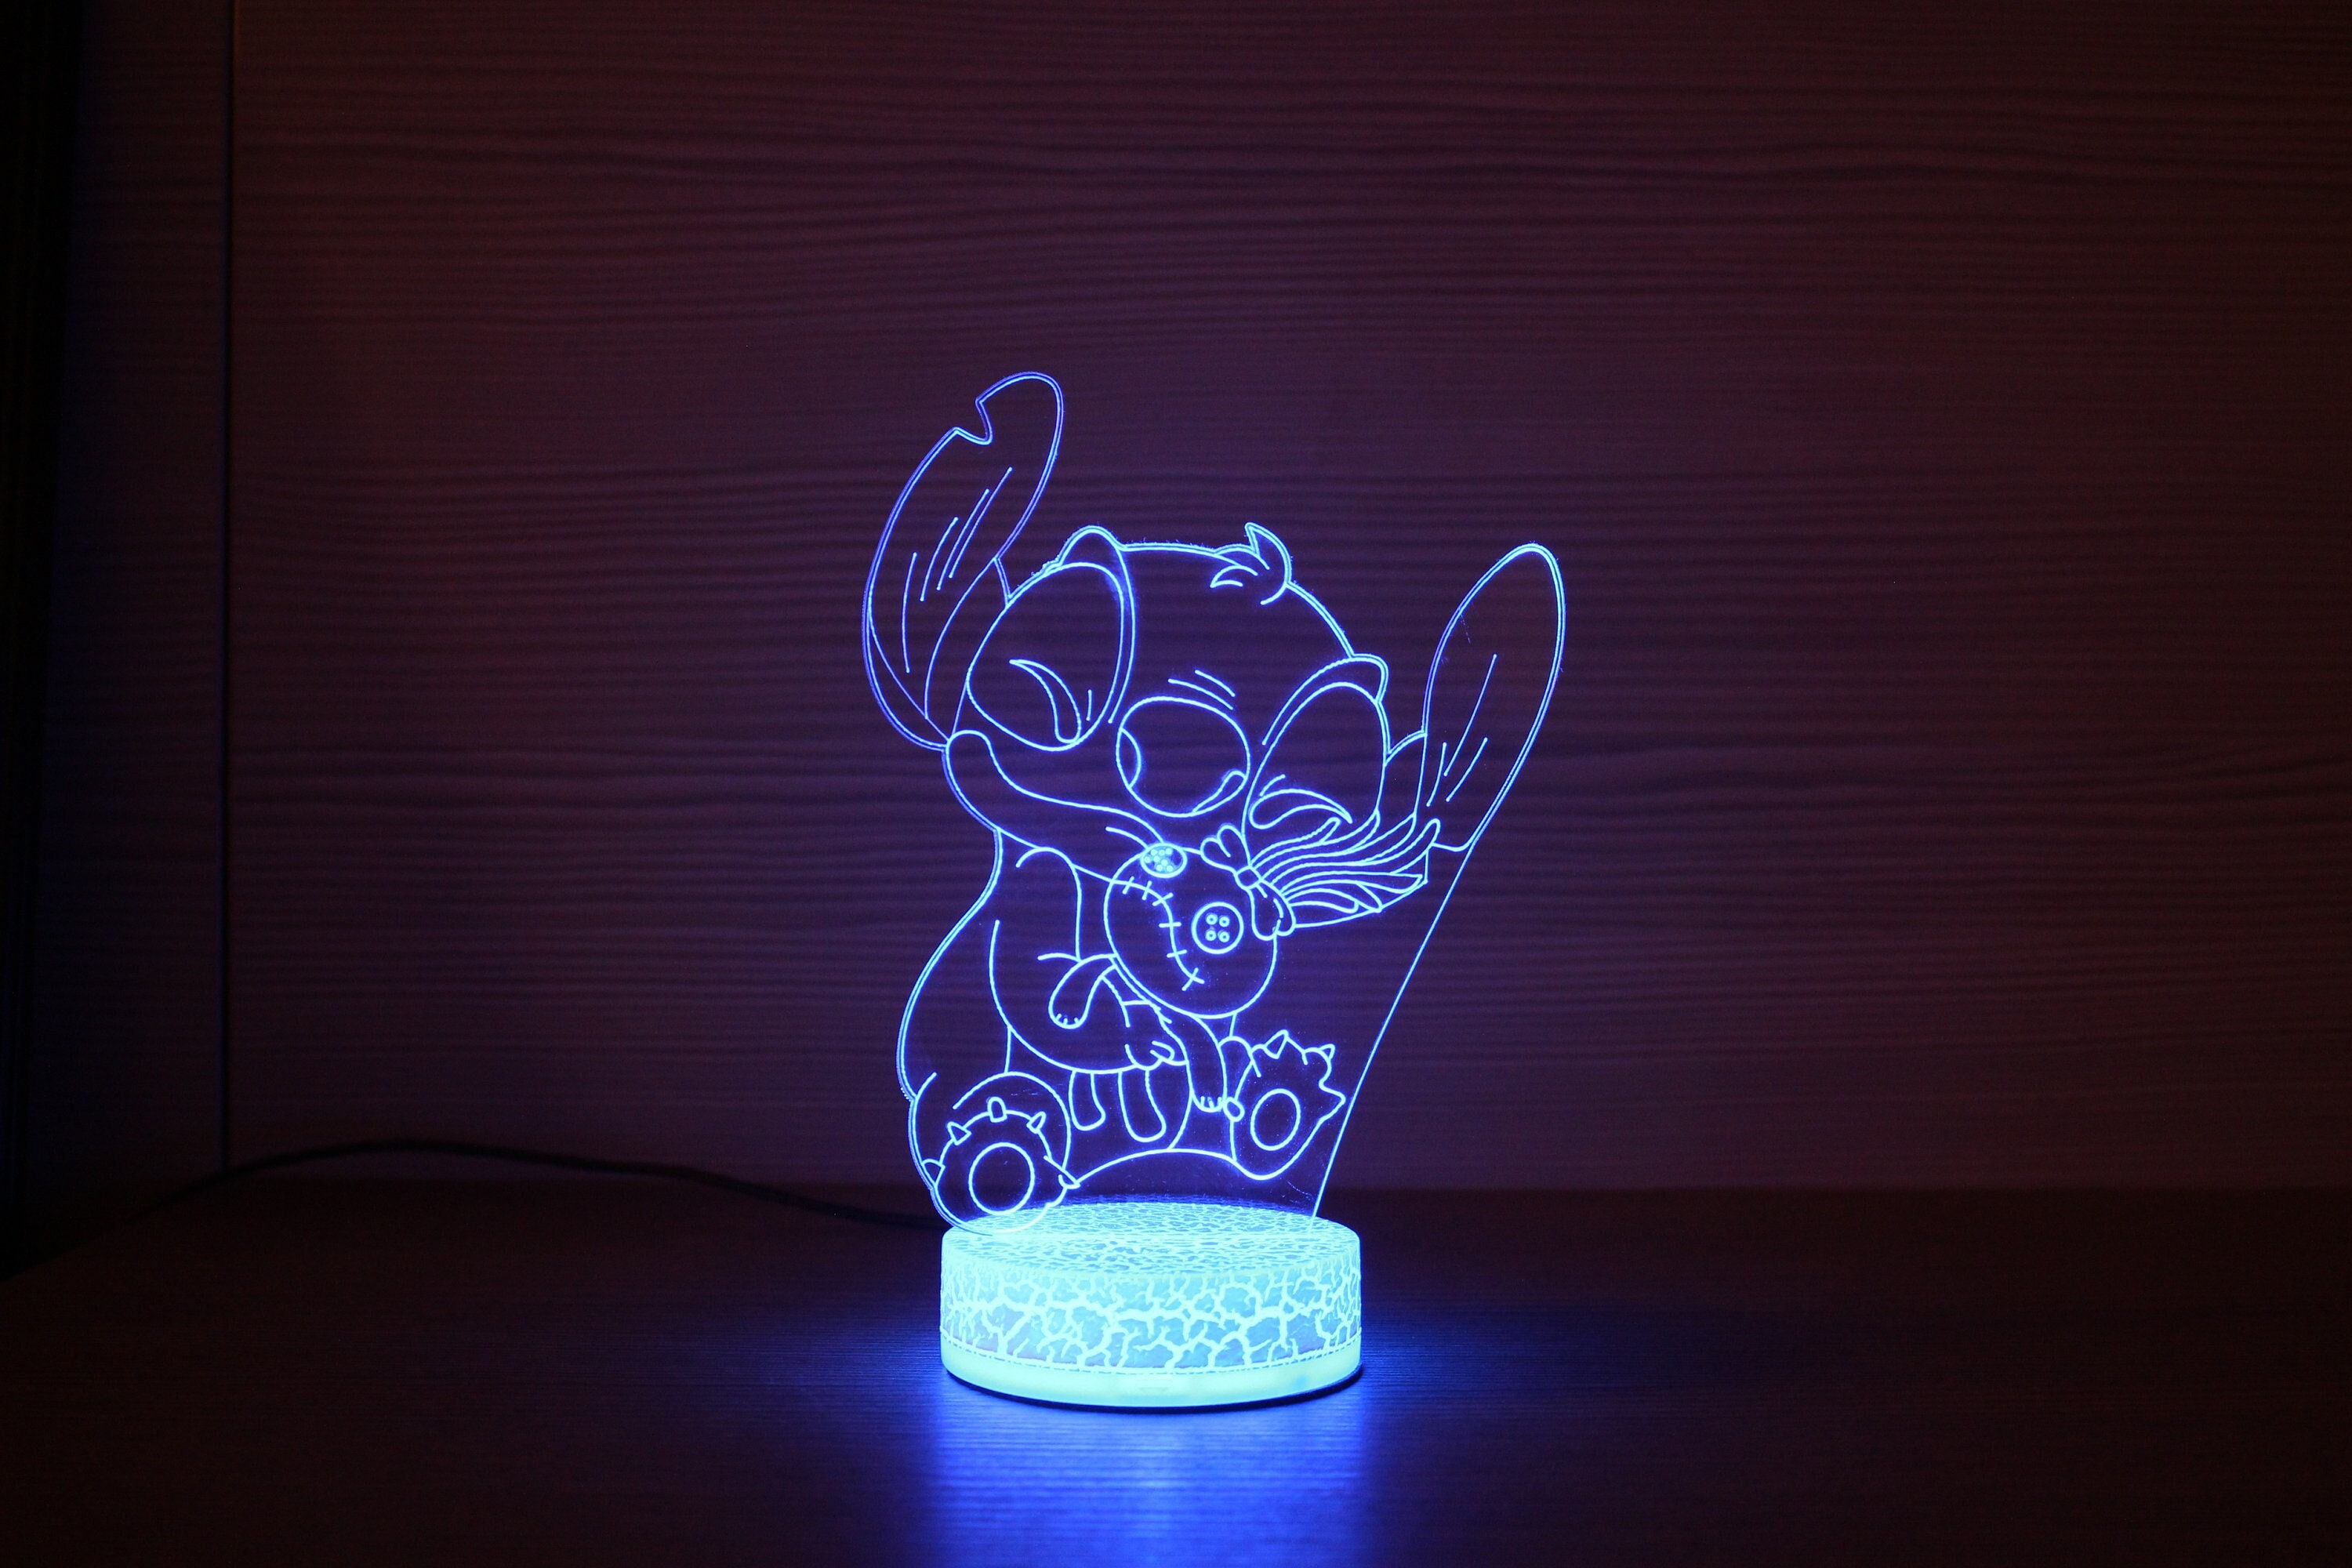 3D Lampe À Led Glow Night Lights Stitch Modèle Lampe Kiddécoration